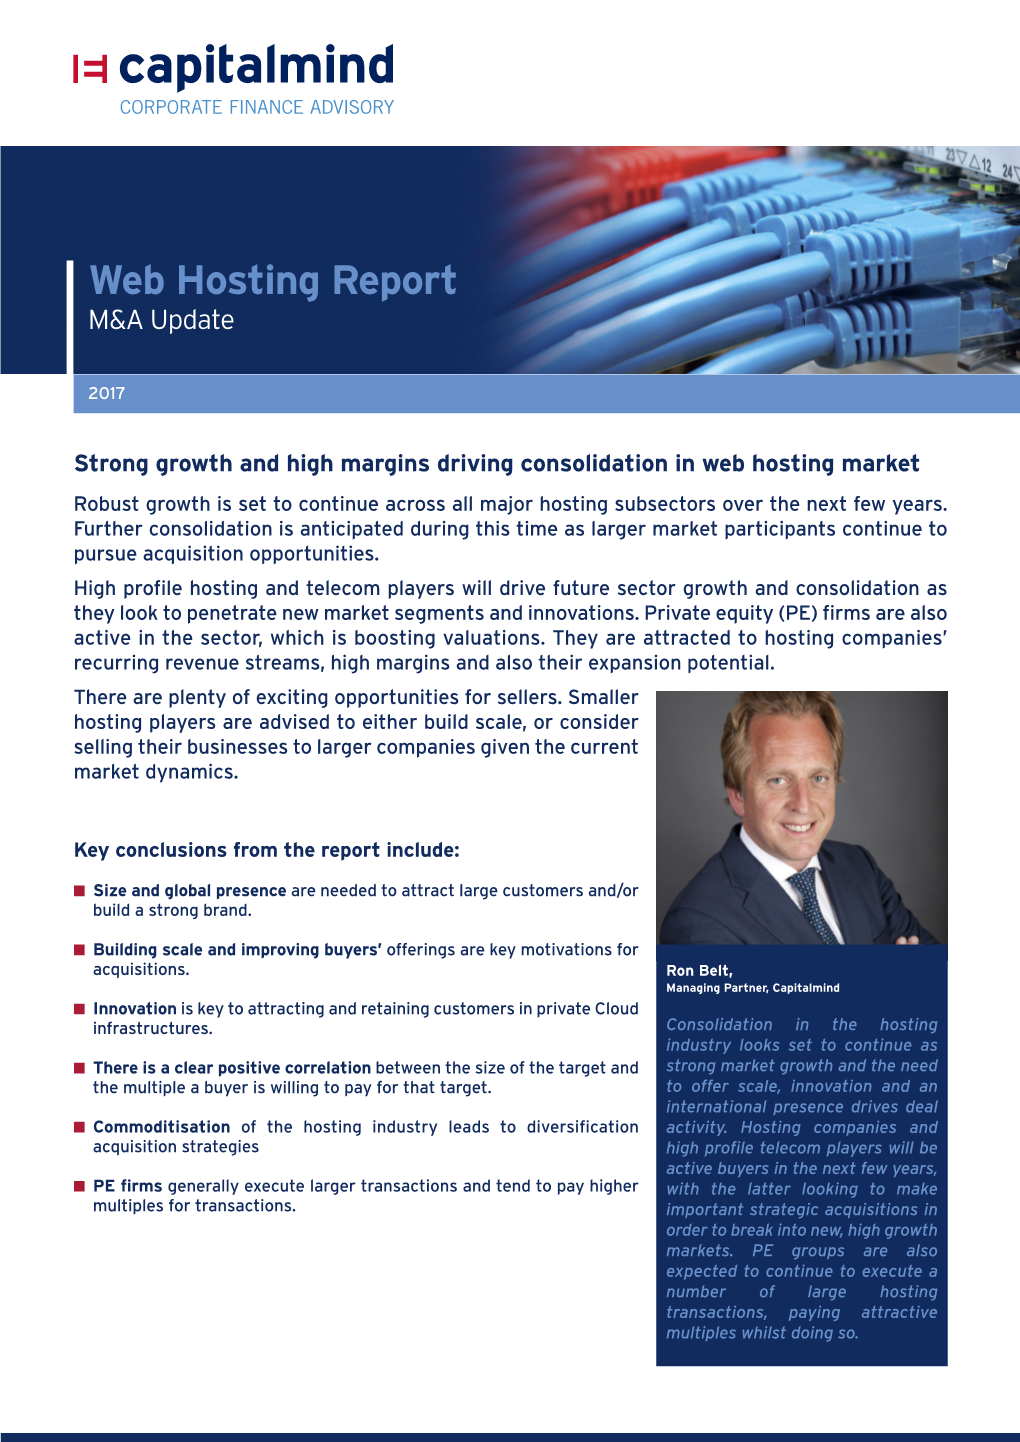 Web Hosting Report M&A Update